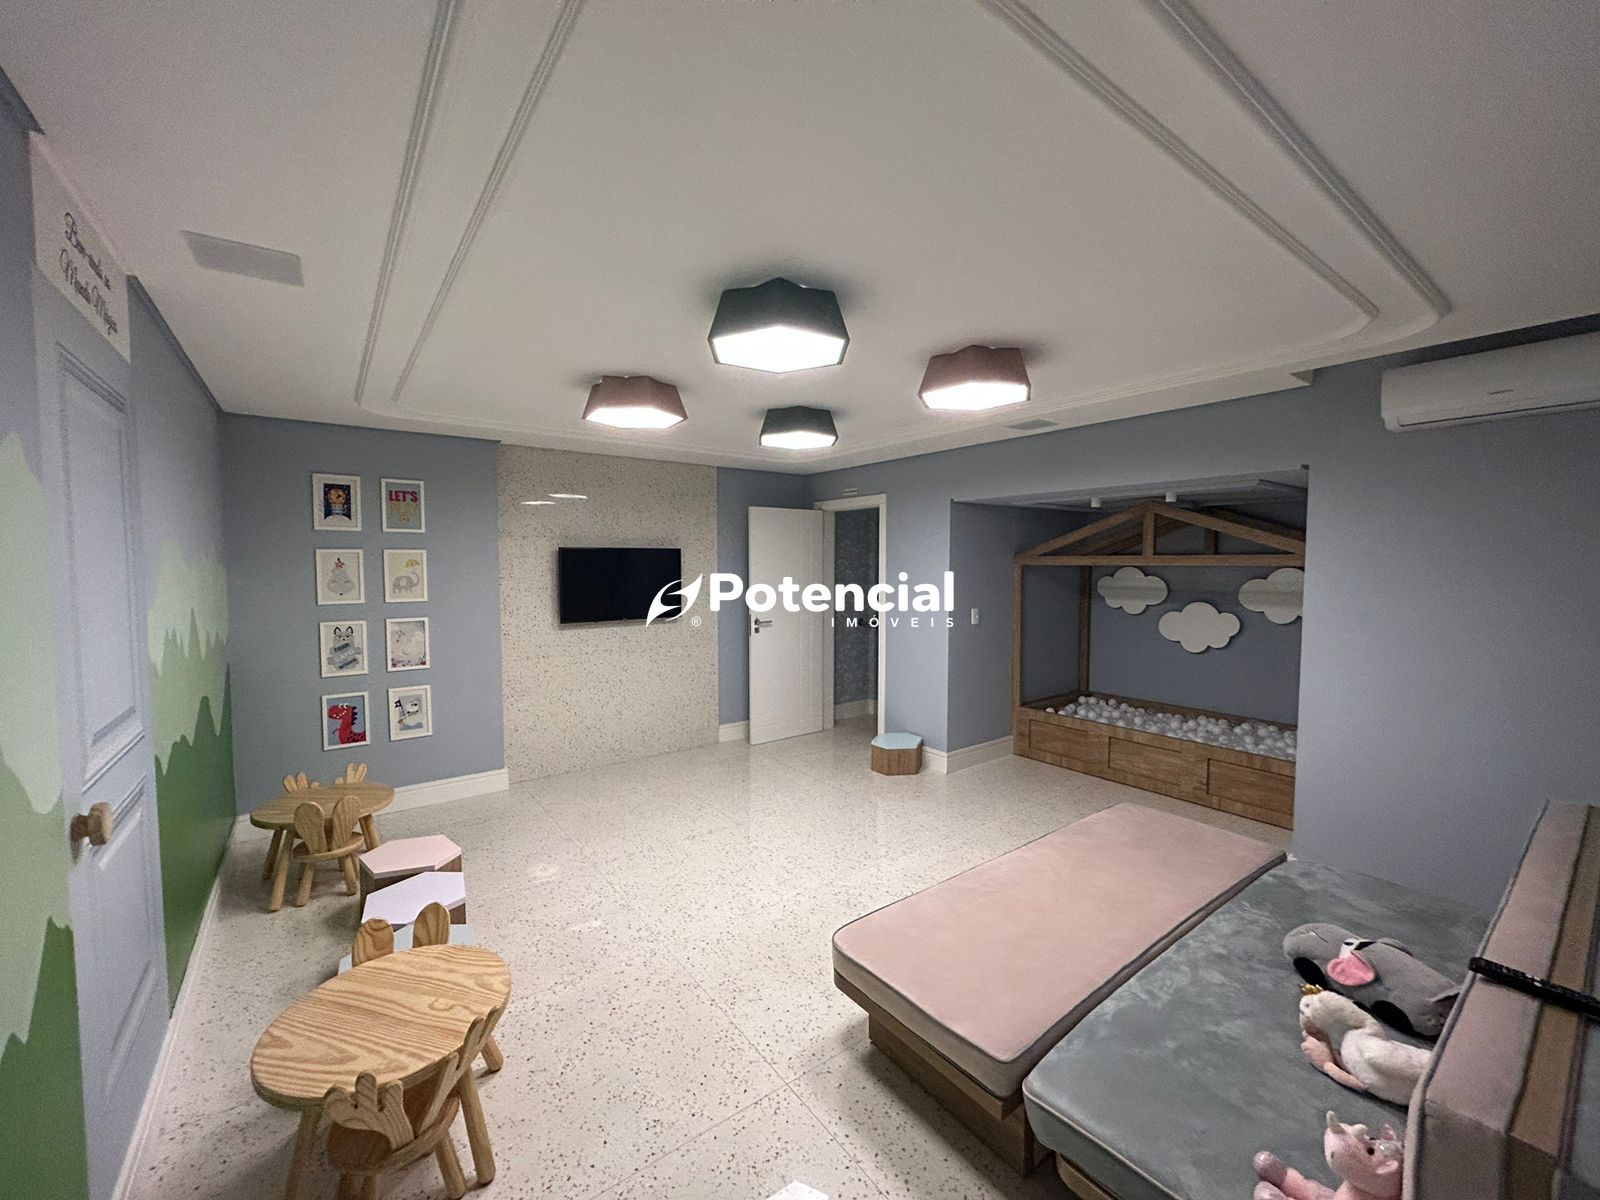 Imagem de Apartamento 04 Suítes Quadra Mar Semi- Mobiliado | Potencial Imóveis